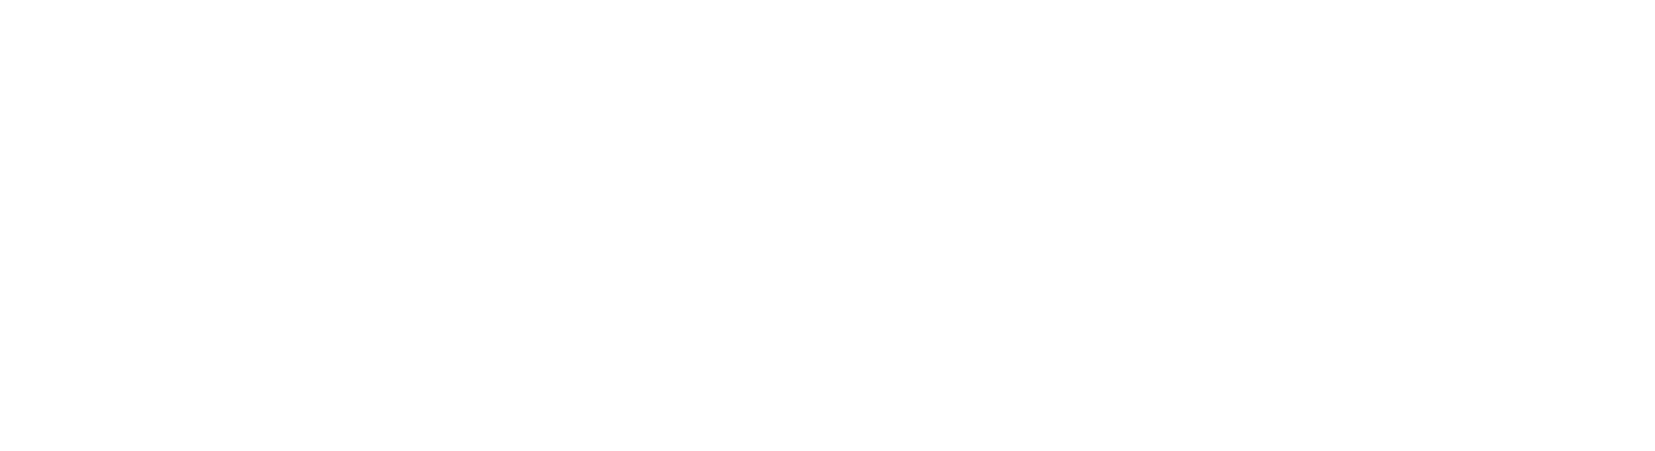 Adobe logo large for dark backgrounds (transparent PNG)